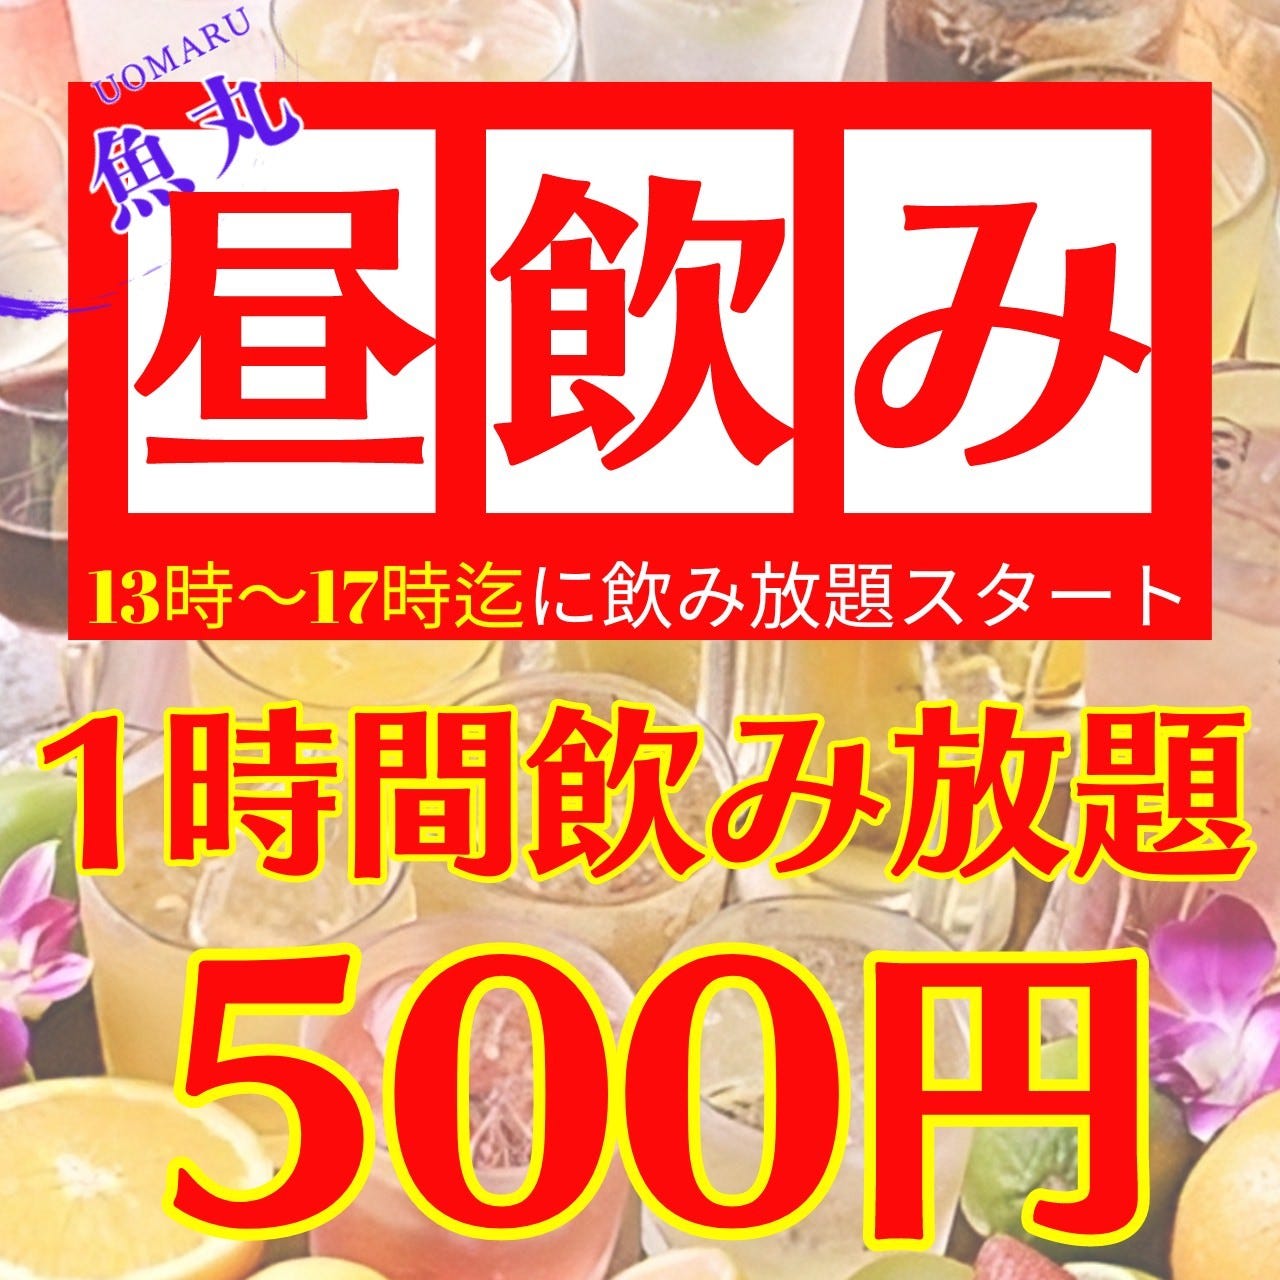 【最安】昼飲み放題1時間500円♪